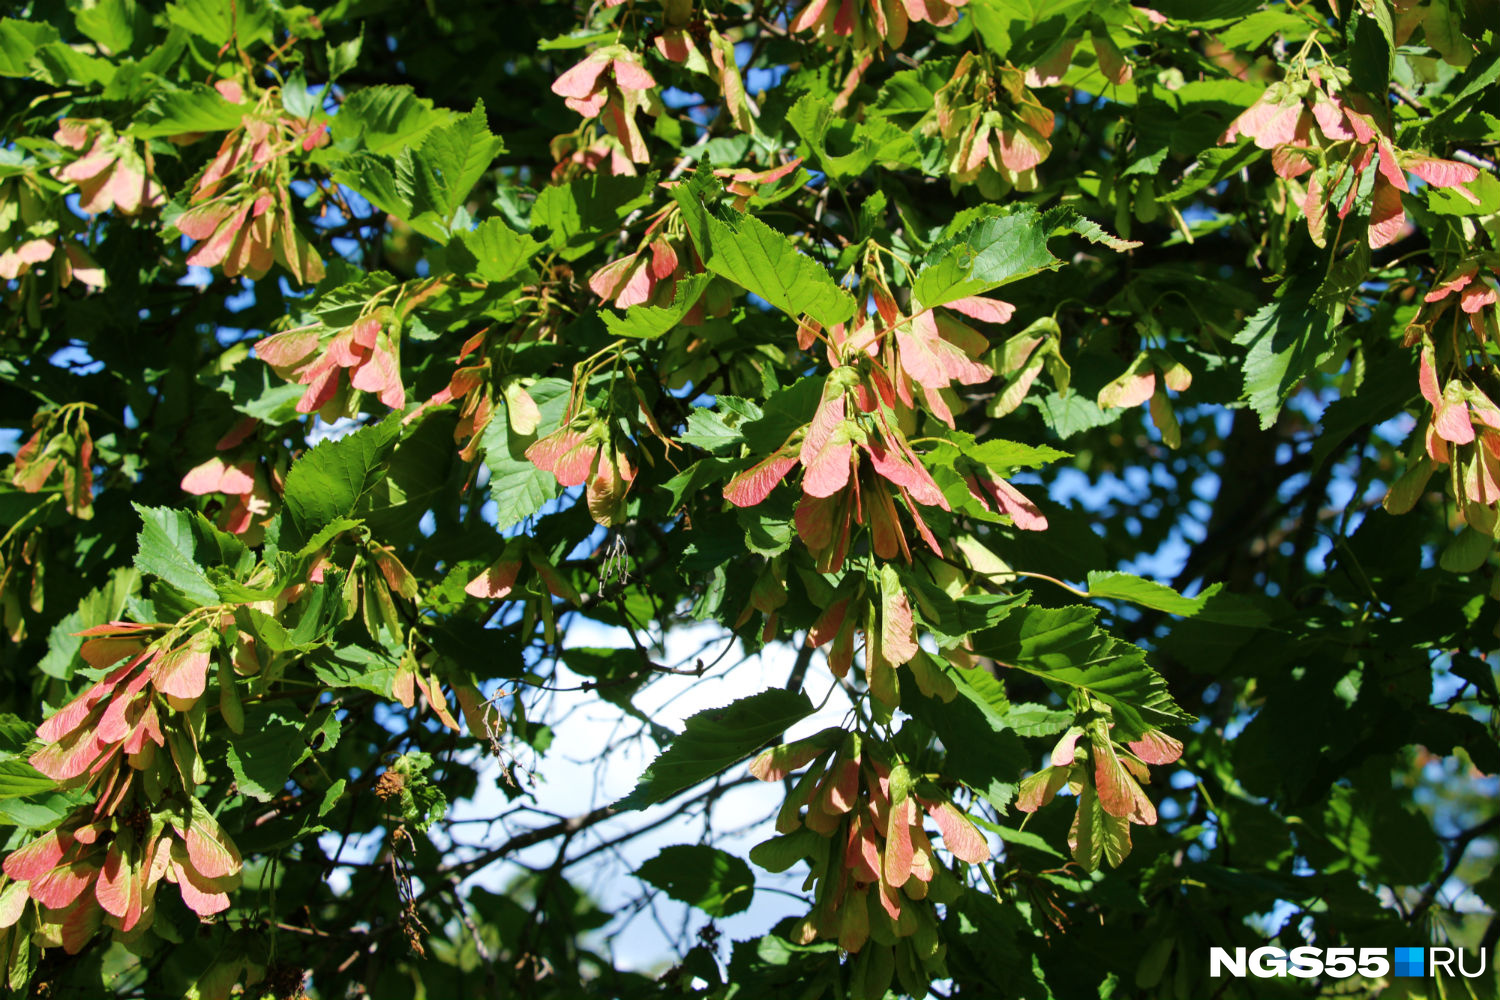 Японский клён с розовыми крылатками, который прижился в Сибири — издалека похоже, что дерево цветёт